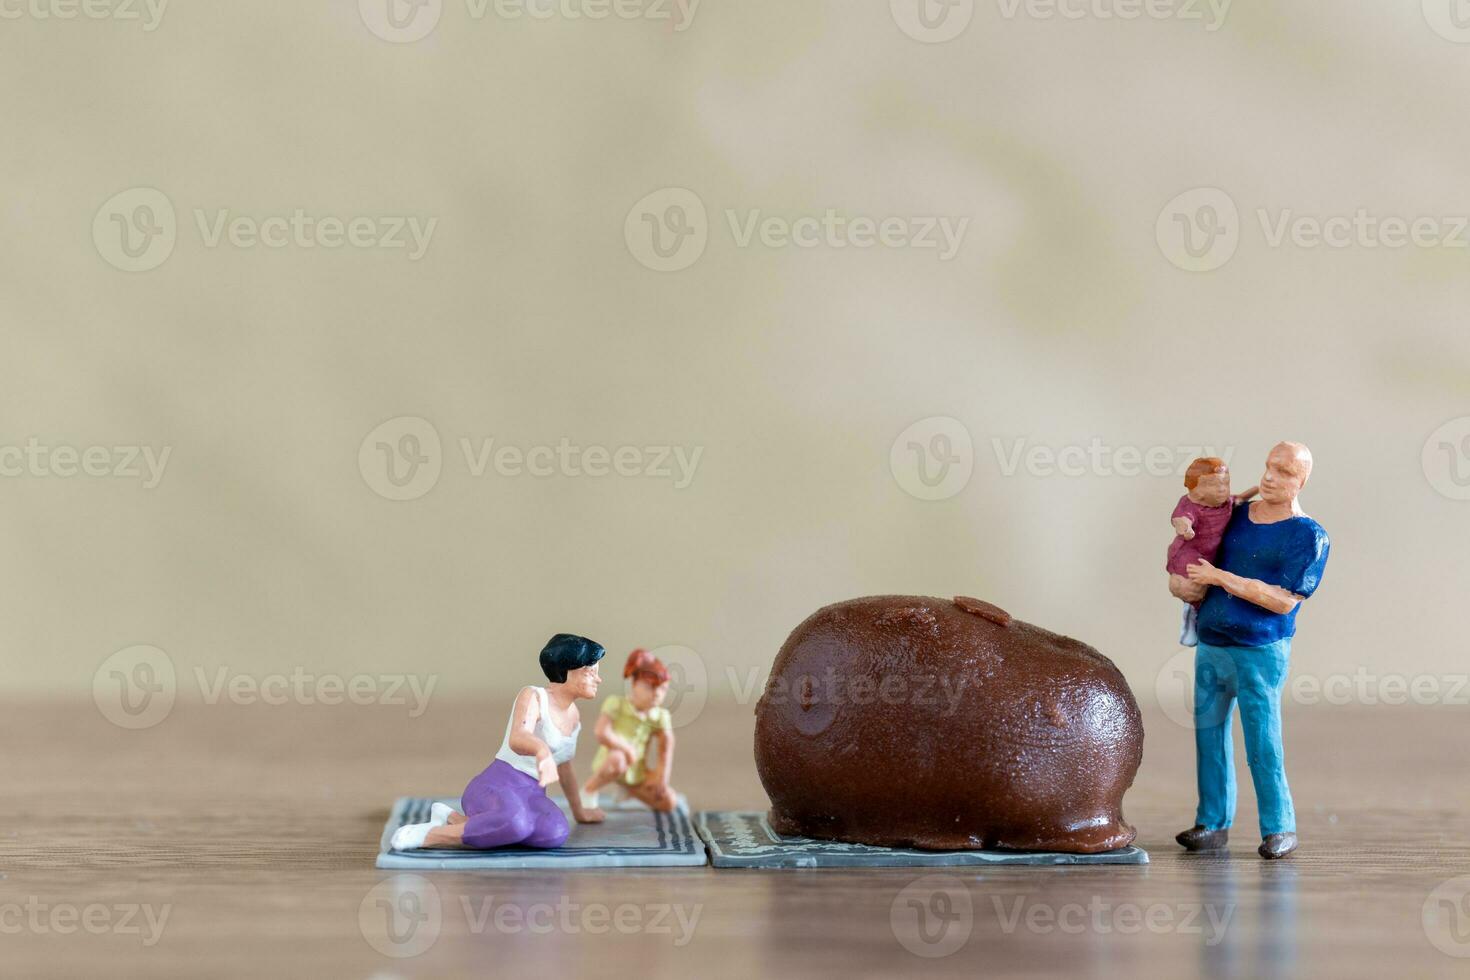 Miniatur Menschen glücklich Familie genießen Schokolade foto